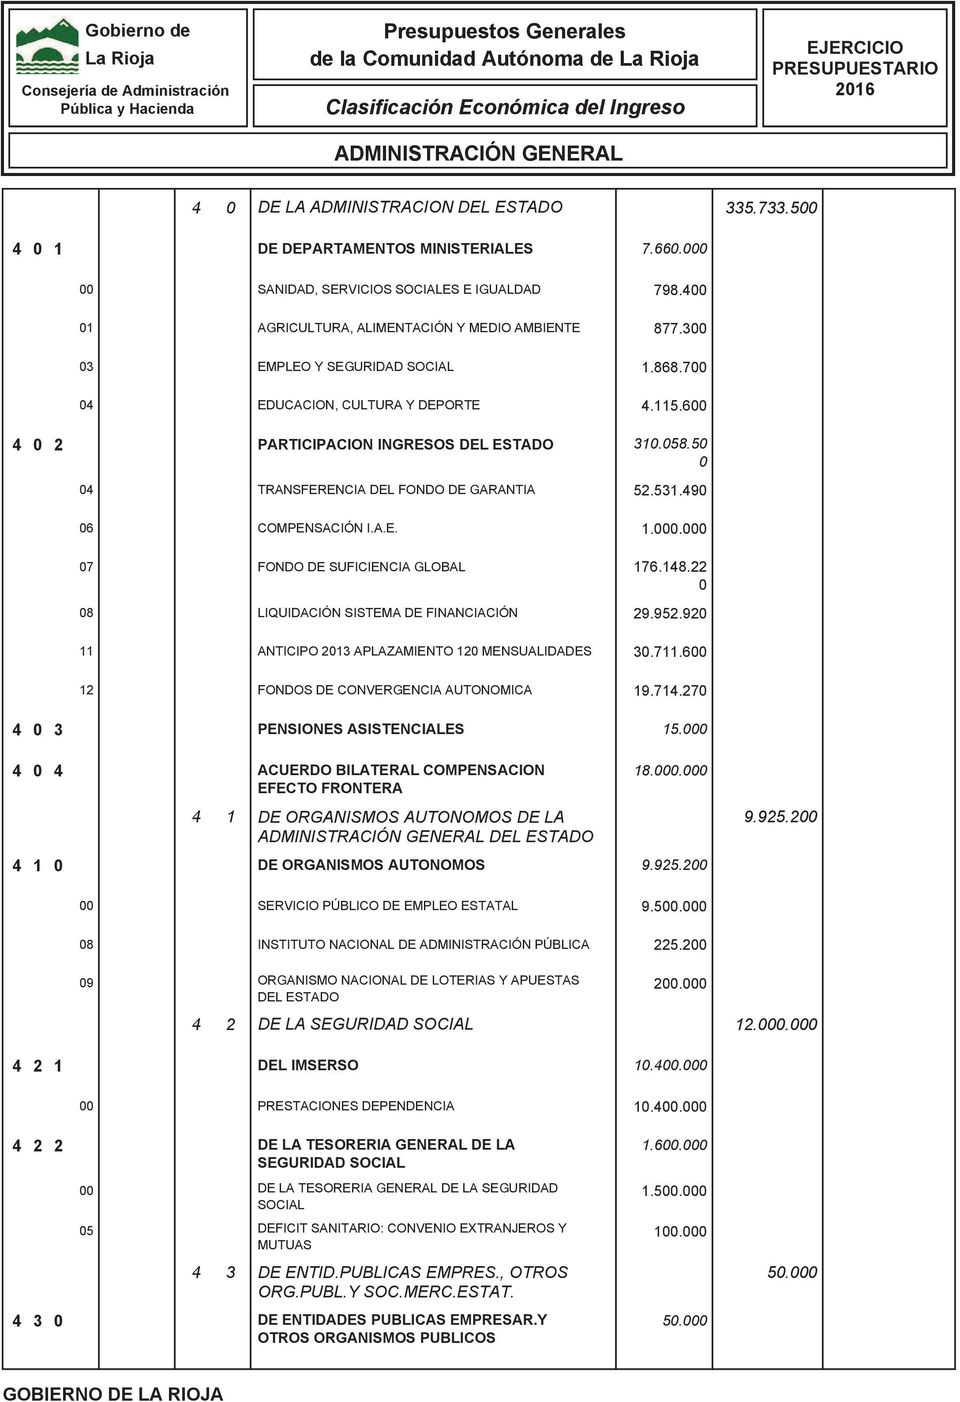 6 4 2 PARTICIPACION INGRESOS DEL ESTADO TRANSFERENCIA DEL FONDO DE GARANTIA 31.8.5 52.531.49 7 11 COMPENSACIÓN I.A.E. FONDO DE SUFICIENCIA GLOBAL LIQUIDACIÓN SISTEMA DE FINANCIACIÓN ANTICIPO 23 APLAZAMIENTO MENSUALIDADES FONDOS DE CONVERGENCIA AUTONOMICA 1.